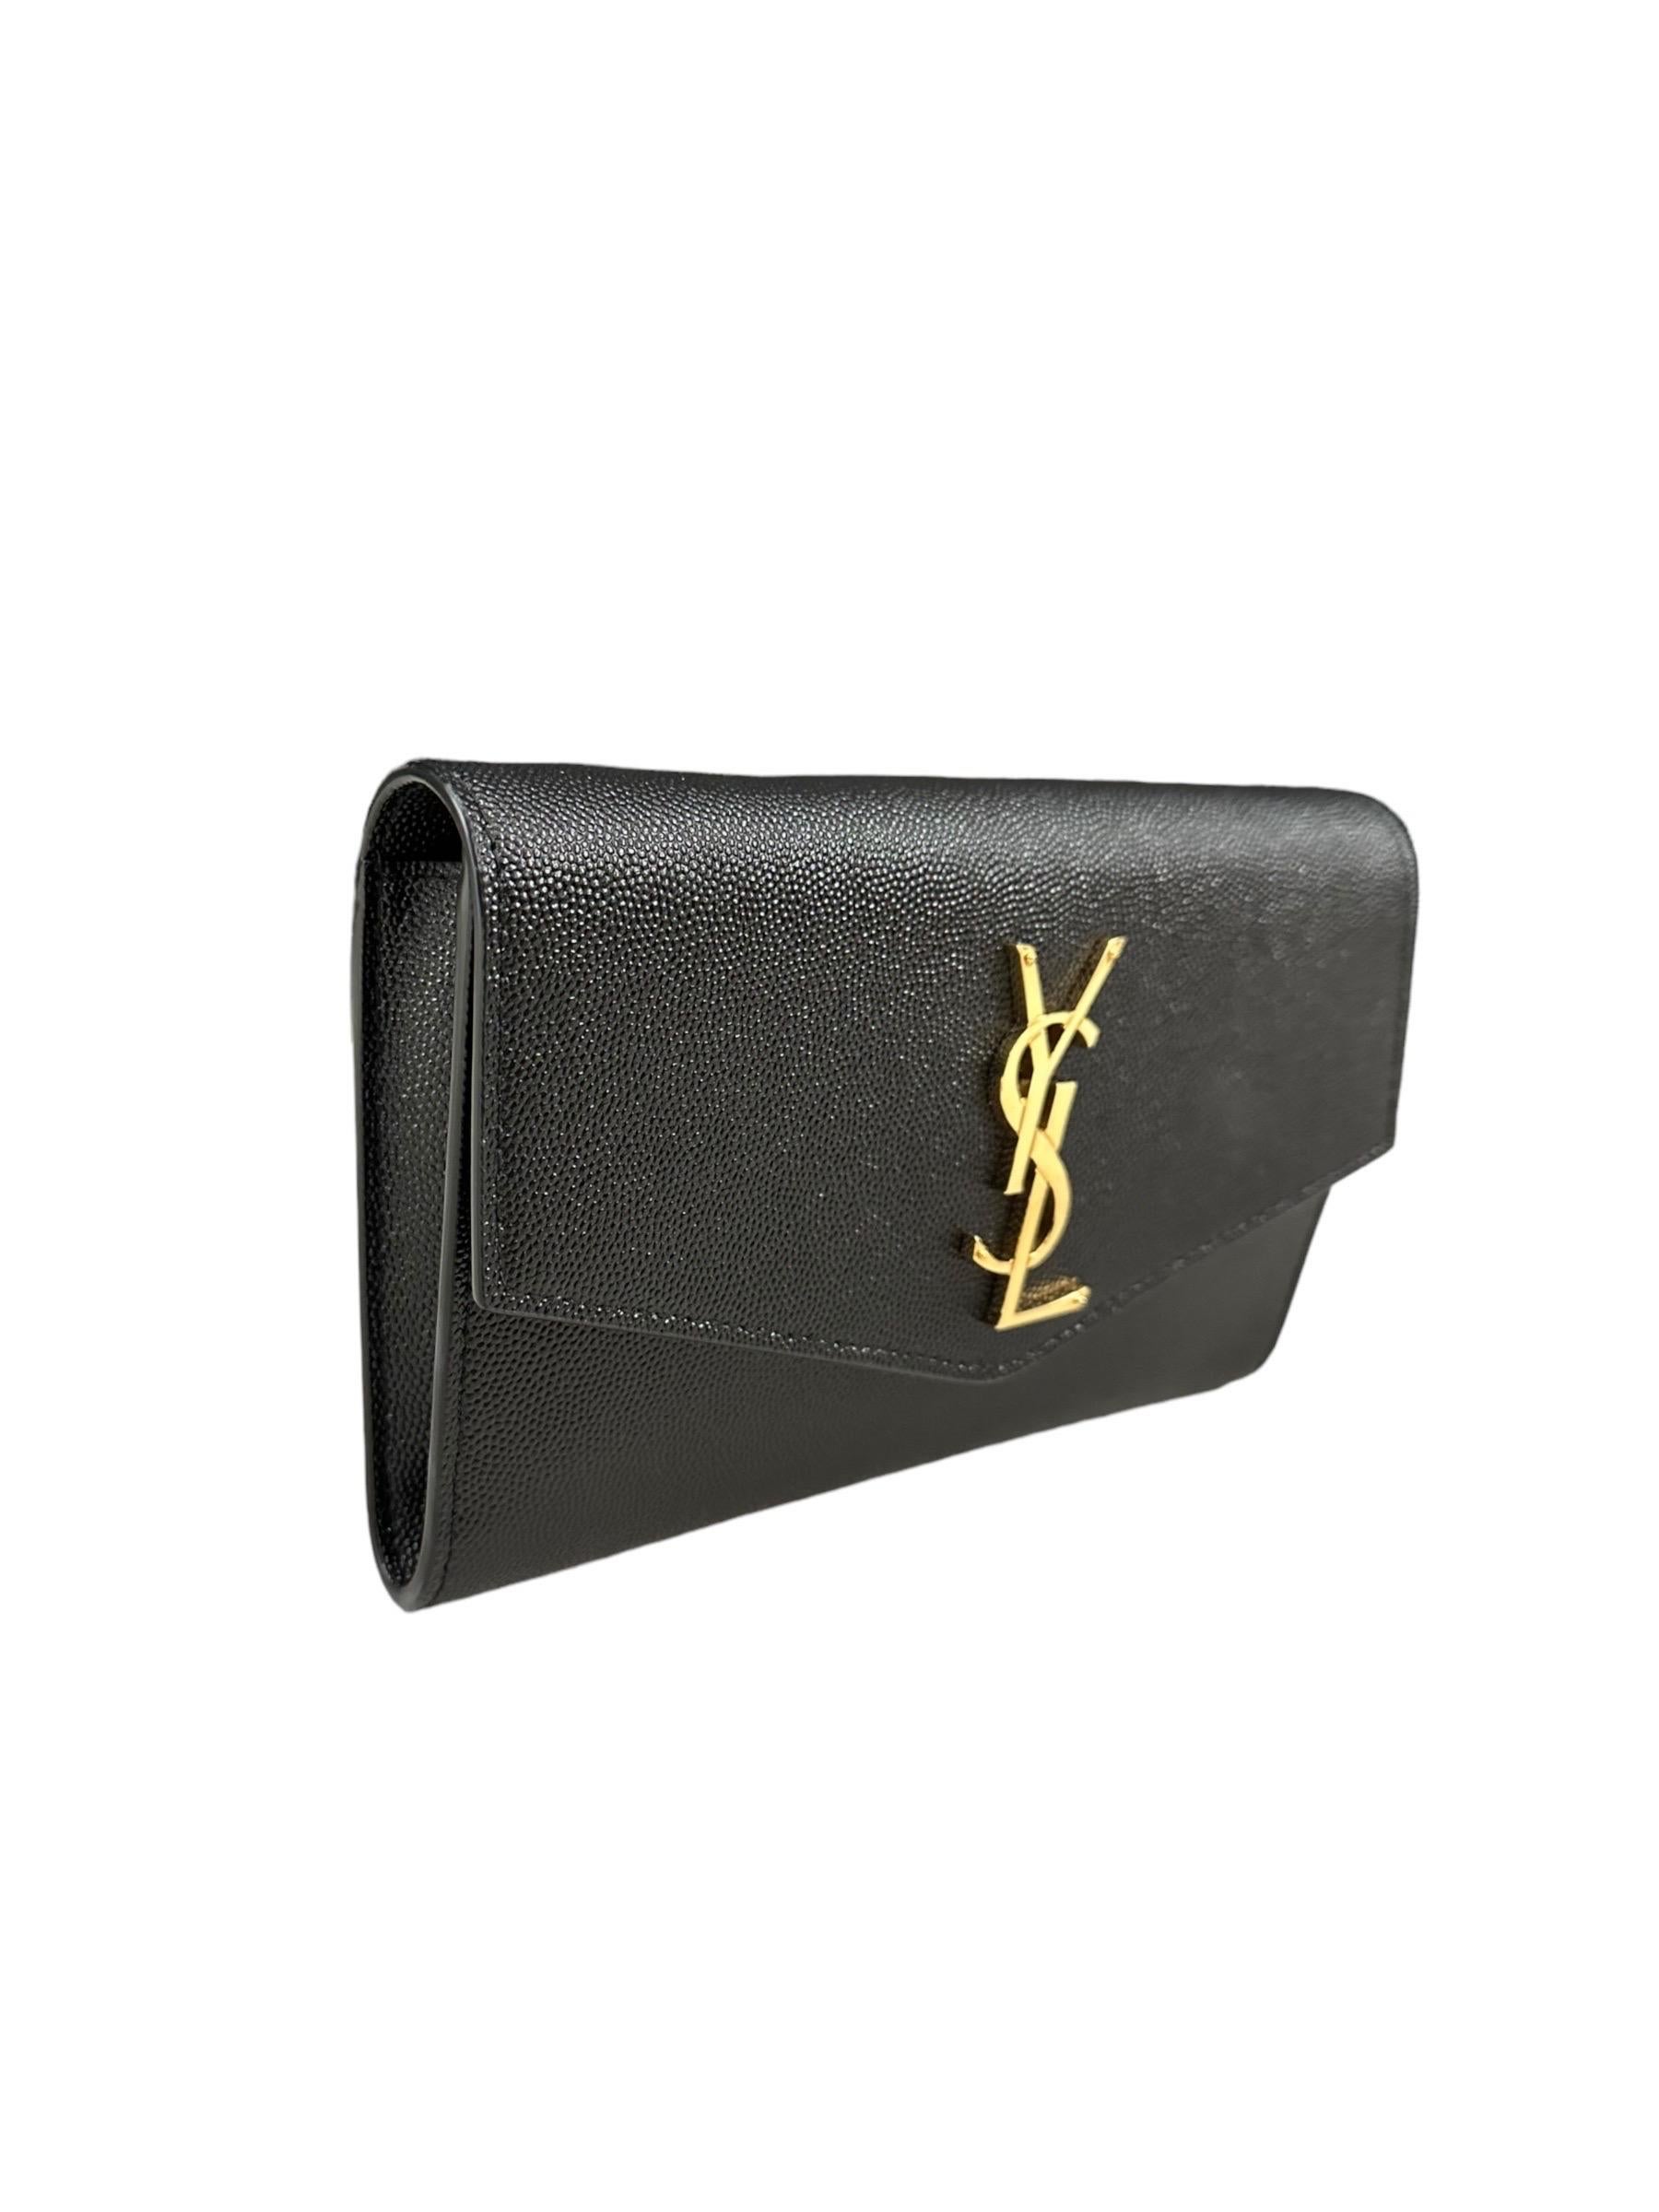 Borsa firmata Saint Laurent modello Wallet on Chain di colore nero, dotata da una tracolla in catena dorata removibile, richiudibile da una patta con bottone, sulla patta frontale è presente il logo del brand in metallo color oro, internamente